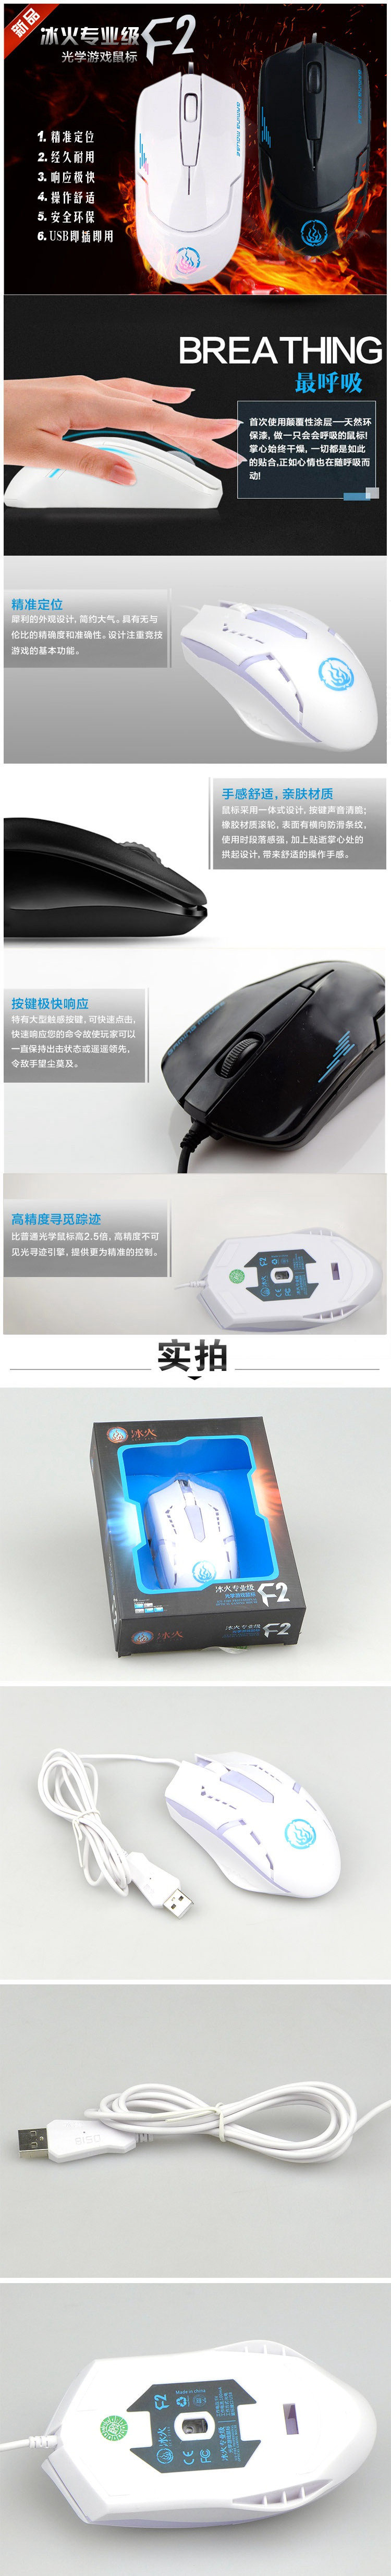 冰兽冰火专业级光学游戏鼠标F2 按键寿命500万次 有线游戏竞技鼠标 USB接口 灵敏耐用 颜色随机